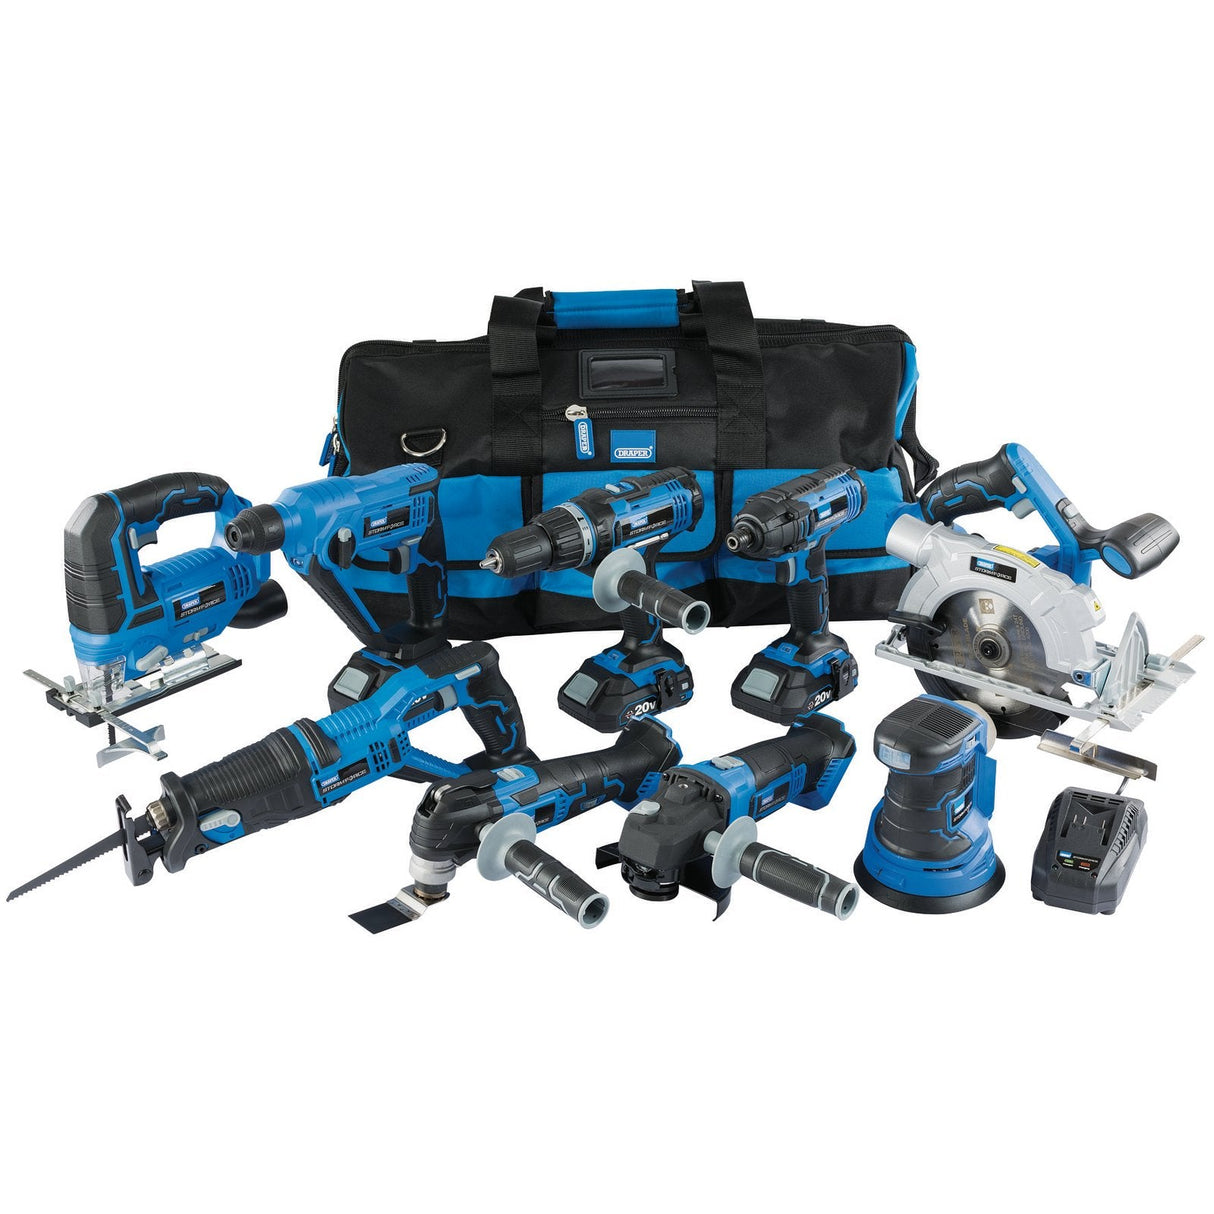 Draper Storm Force&#174; 20V Cordless Kit (9 Piece) - PTK920VMK - Farming Parts